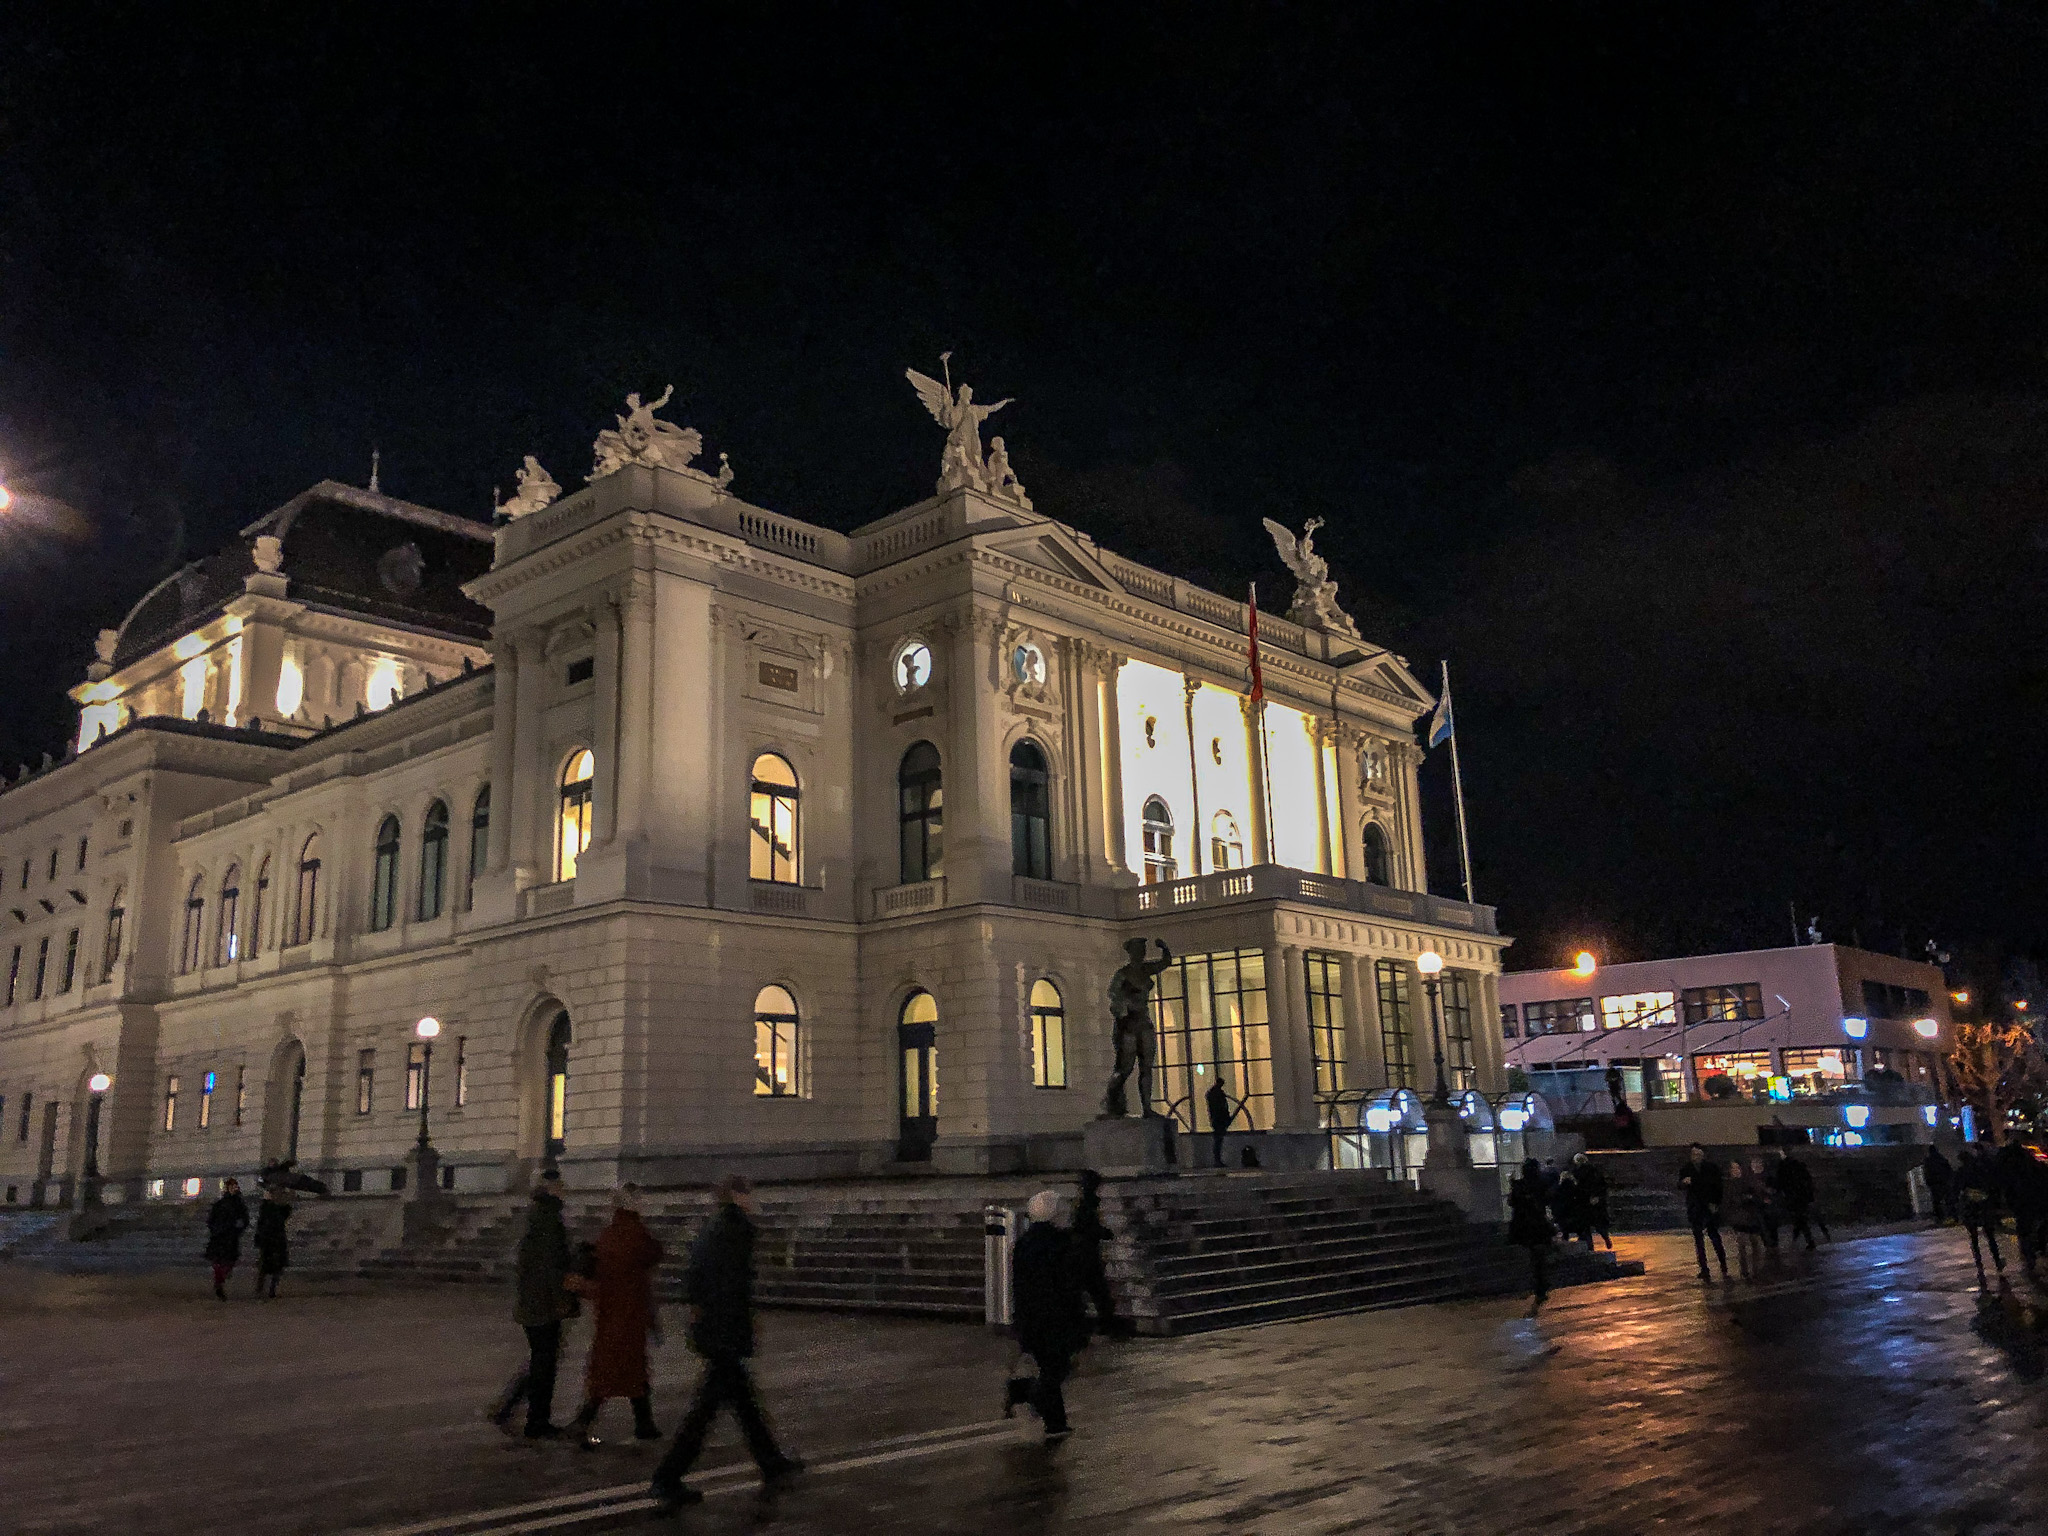 Opera house in Zurich